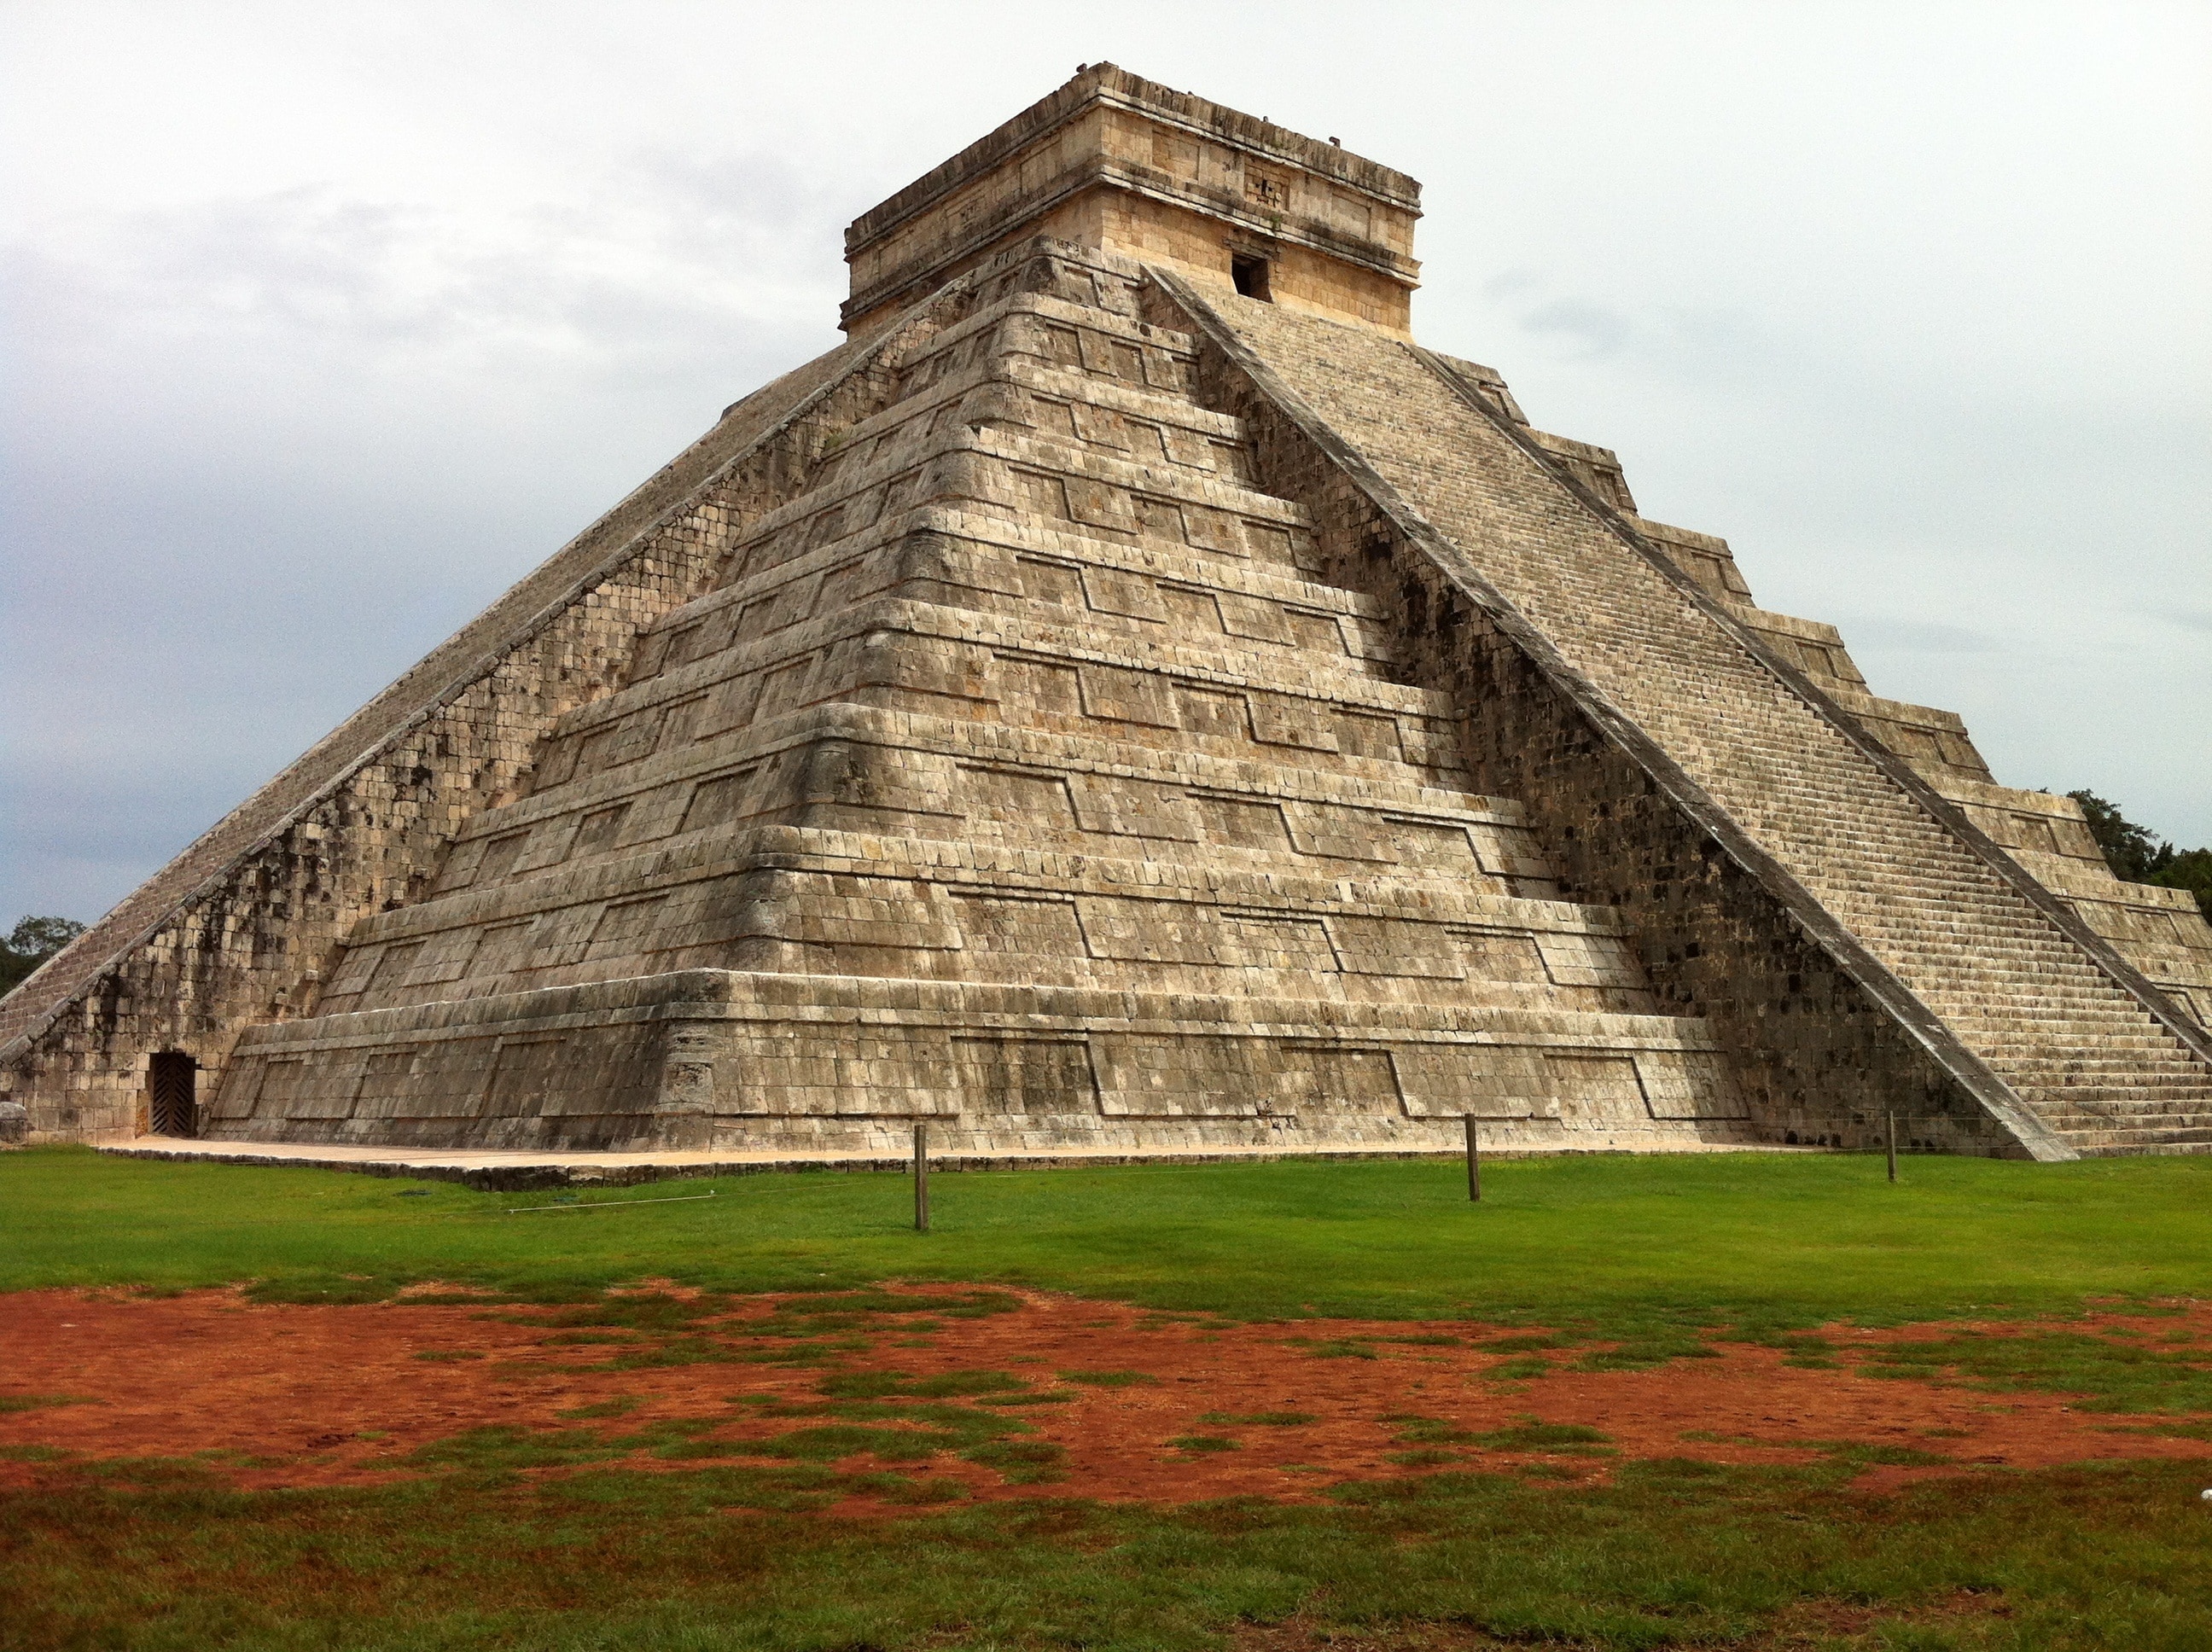 ancient aztec pyramid